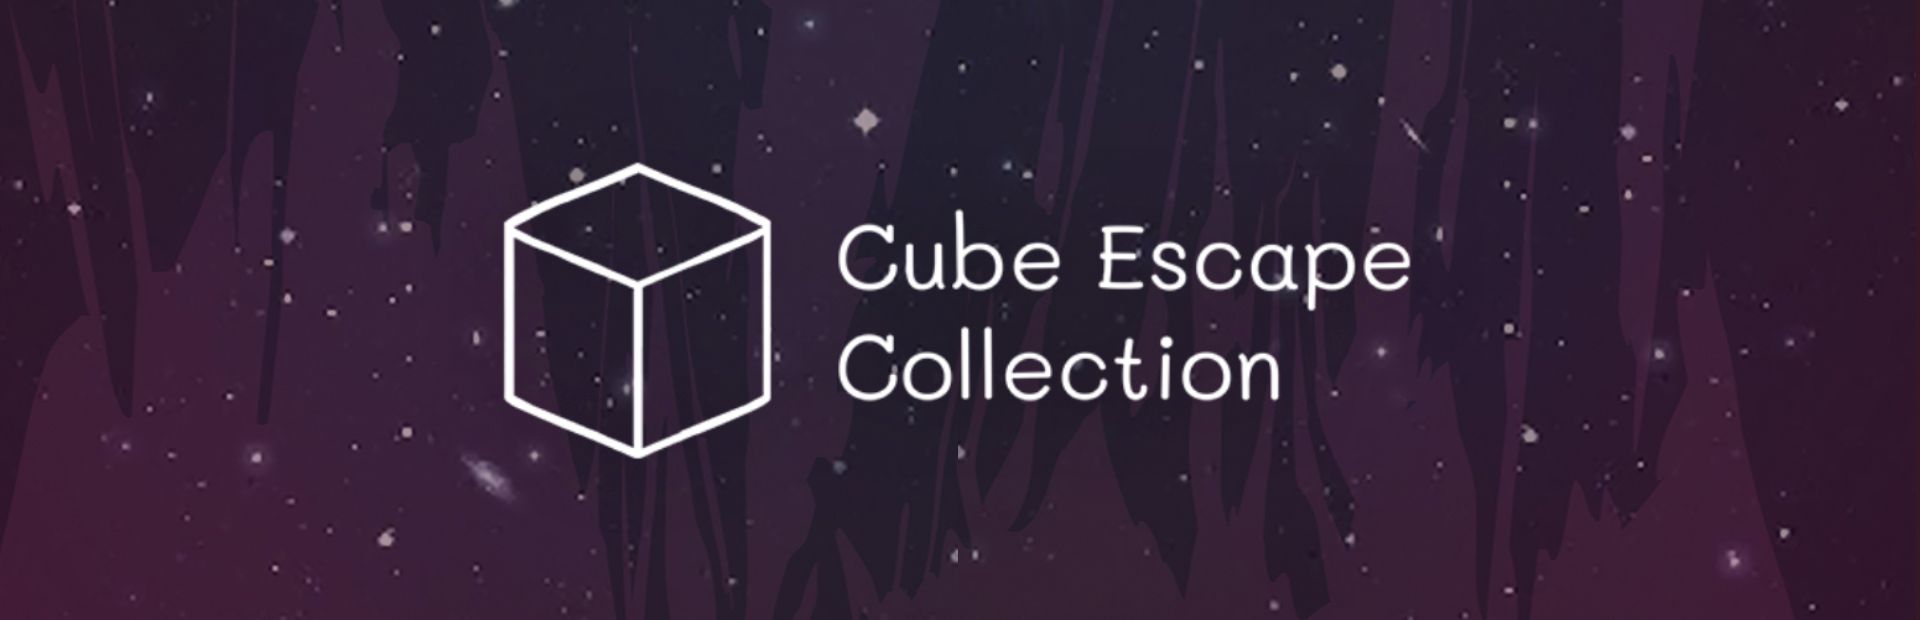 Cube Escape Collection Walkthrough